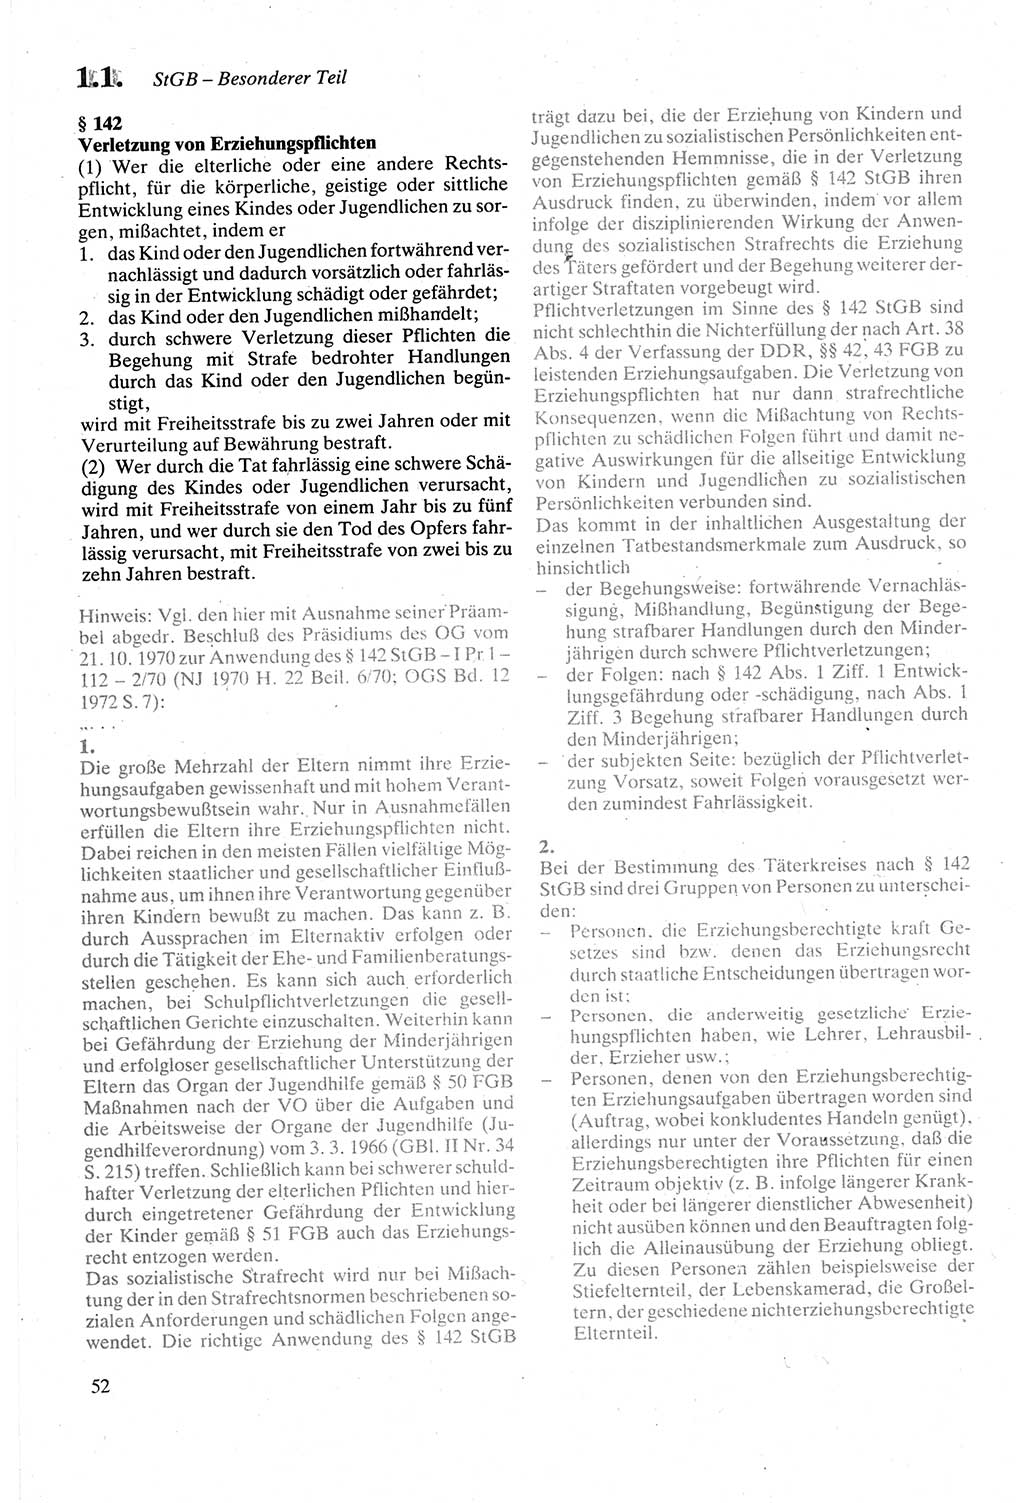 Strafgesetzbuch (StGB) der Deutschen Demokratischen Republik (DDR) sowie angrenzende Gesetze und Bestimmungen 1979, Seite 52 (StGB DDR Ges. Best. 1979, S. 52)